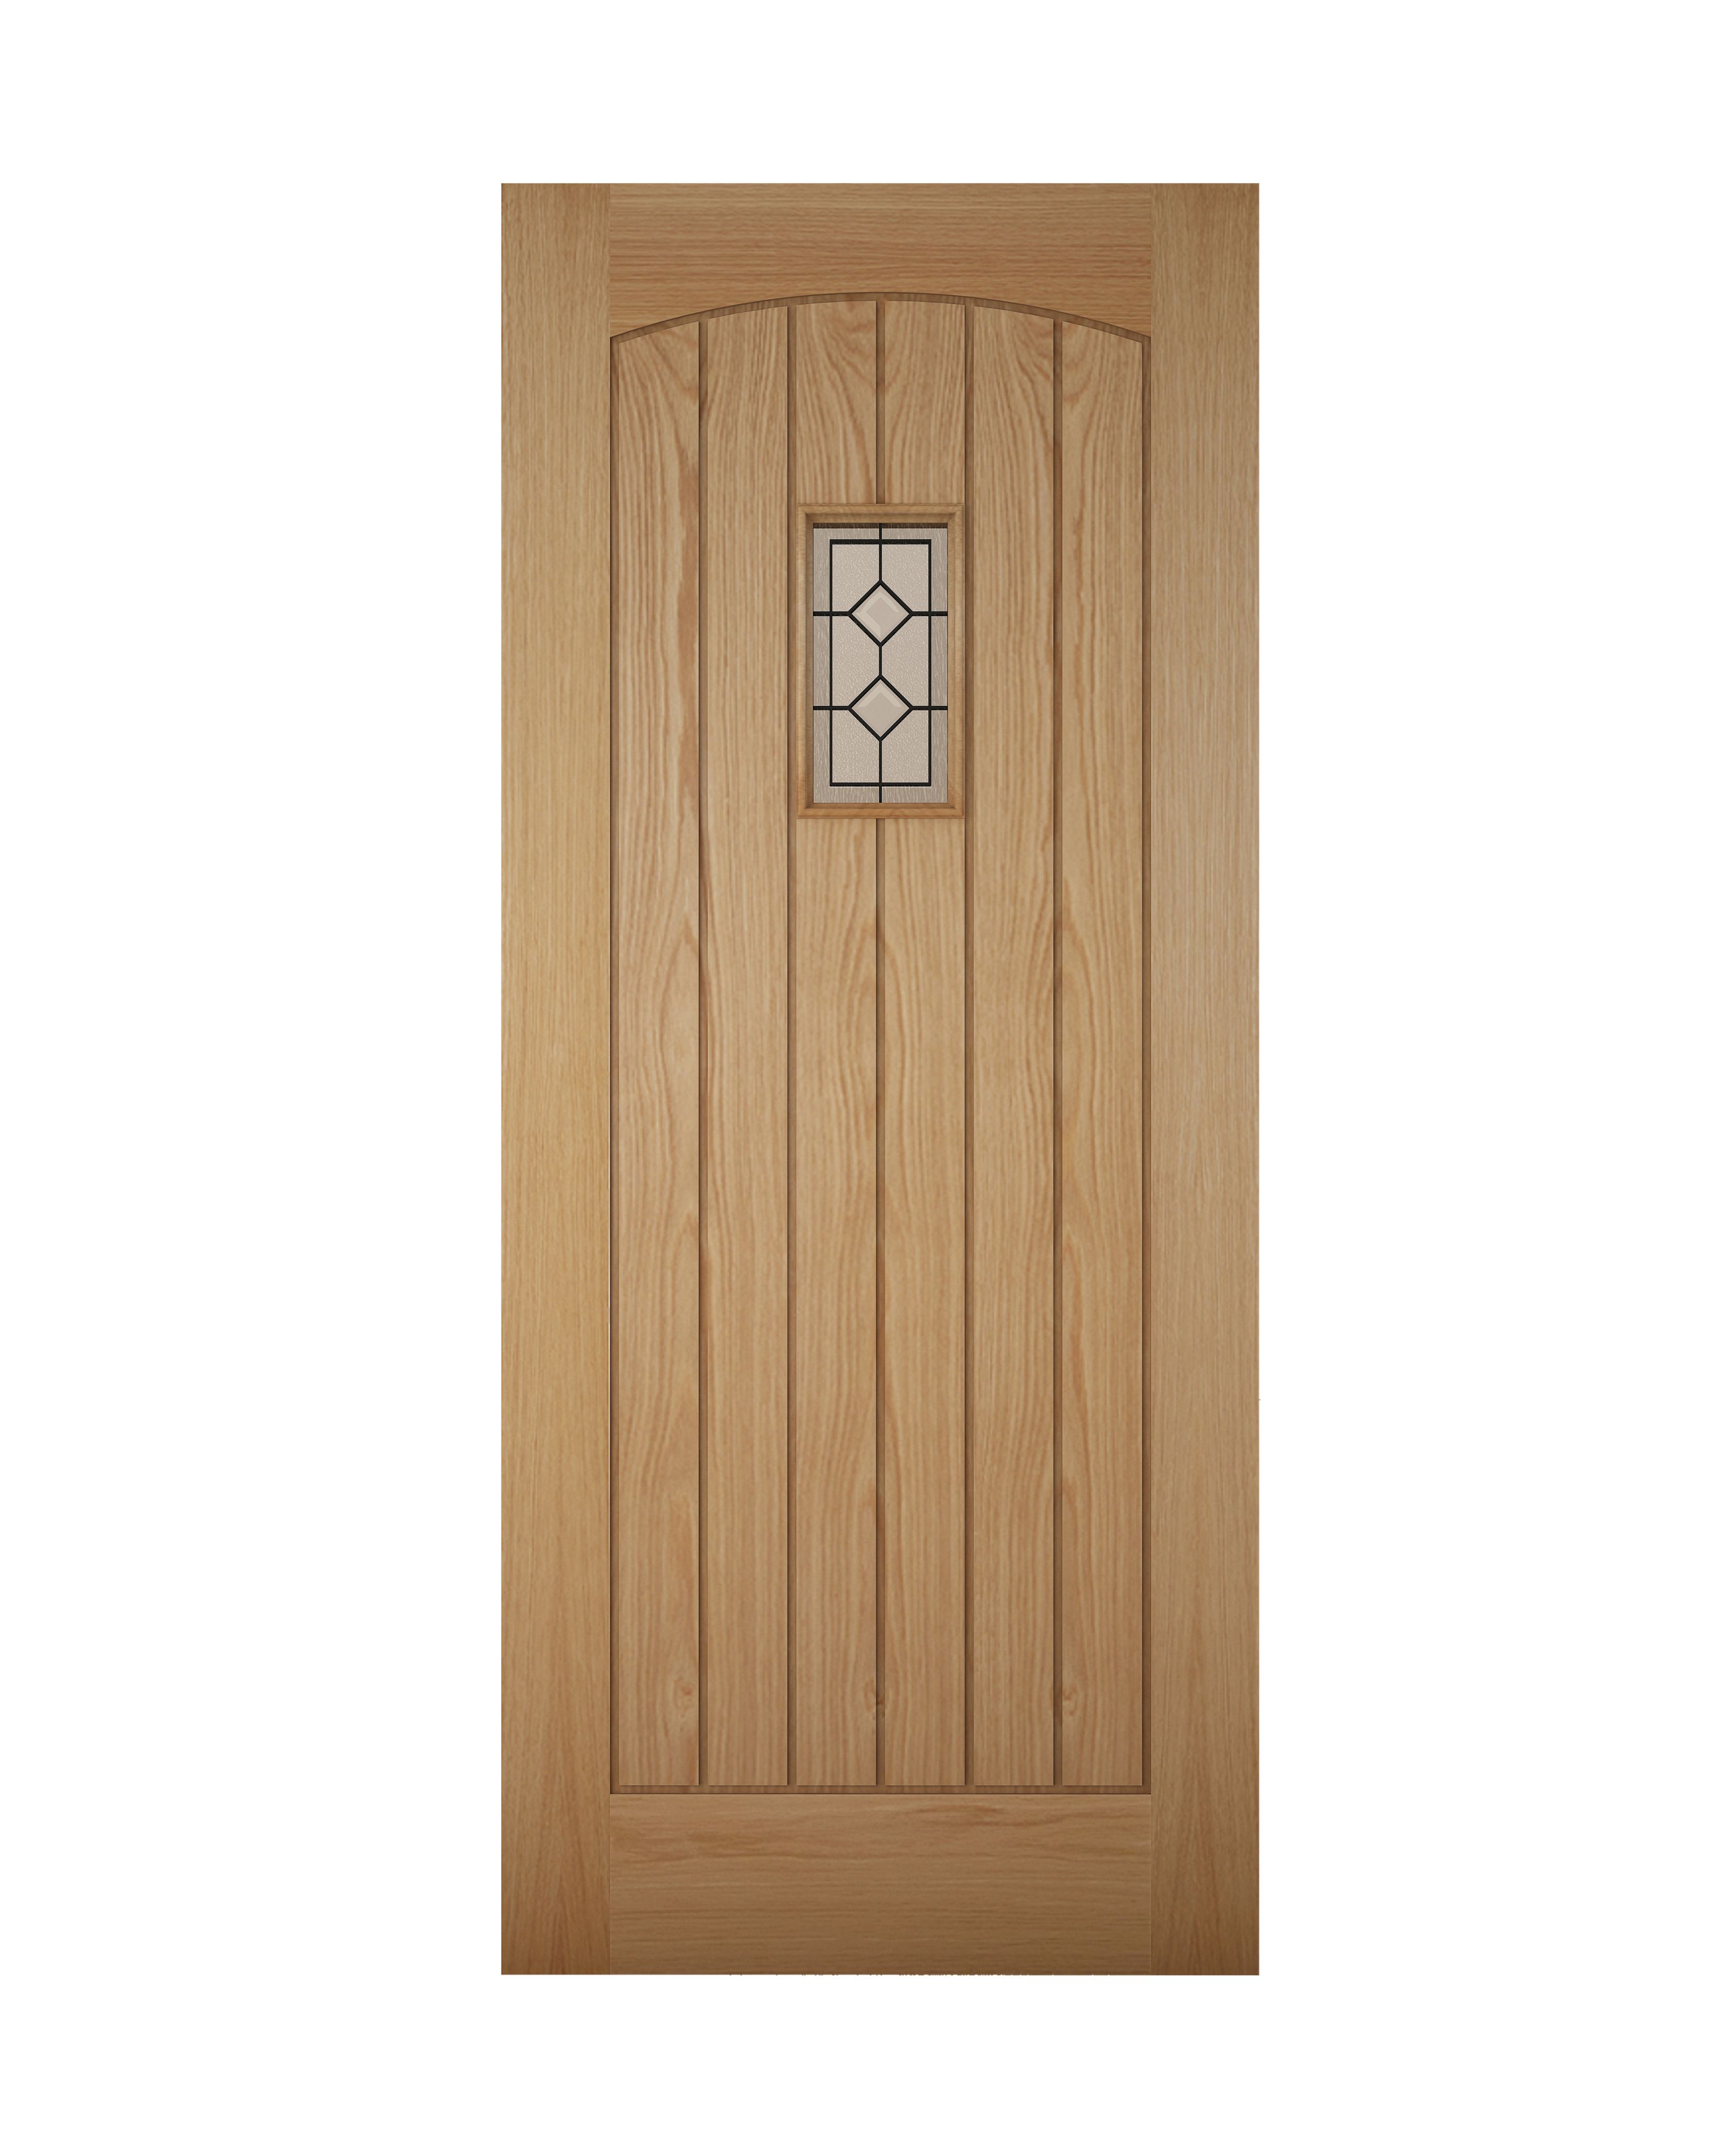 Glazed Cottage White oak veneer Left & RHed Front Door set, (H)2074mm (W)856mm